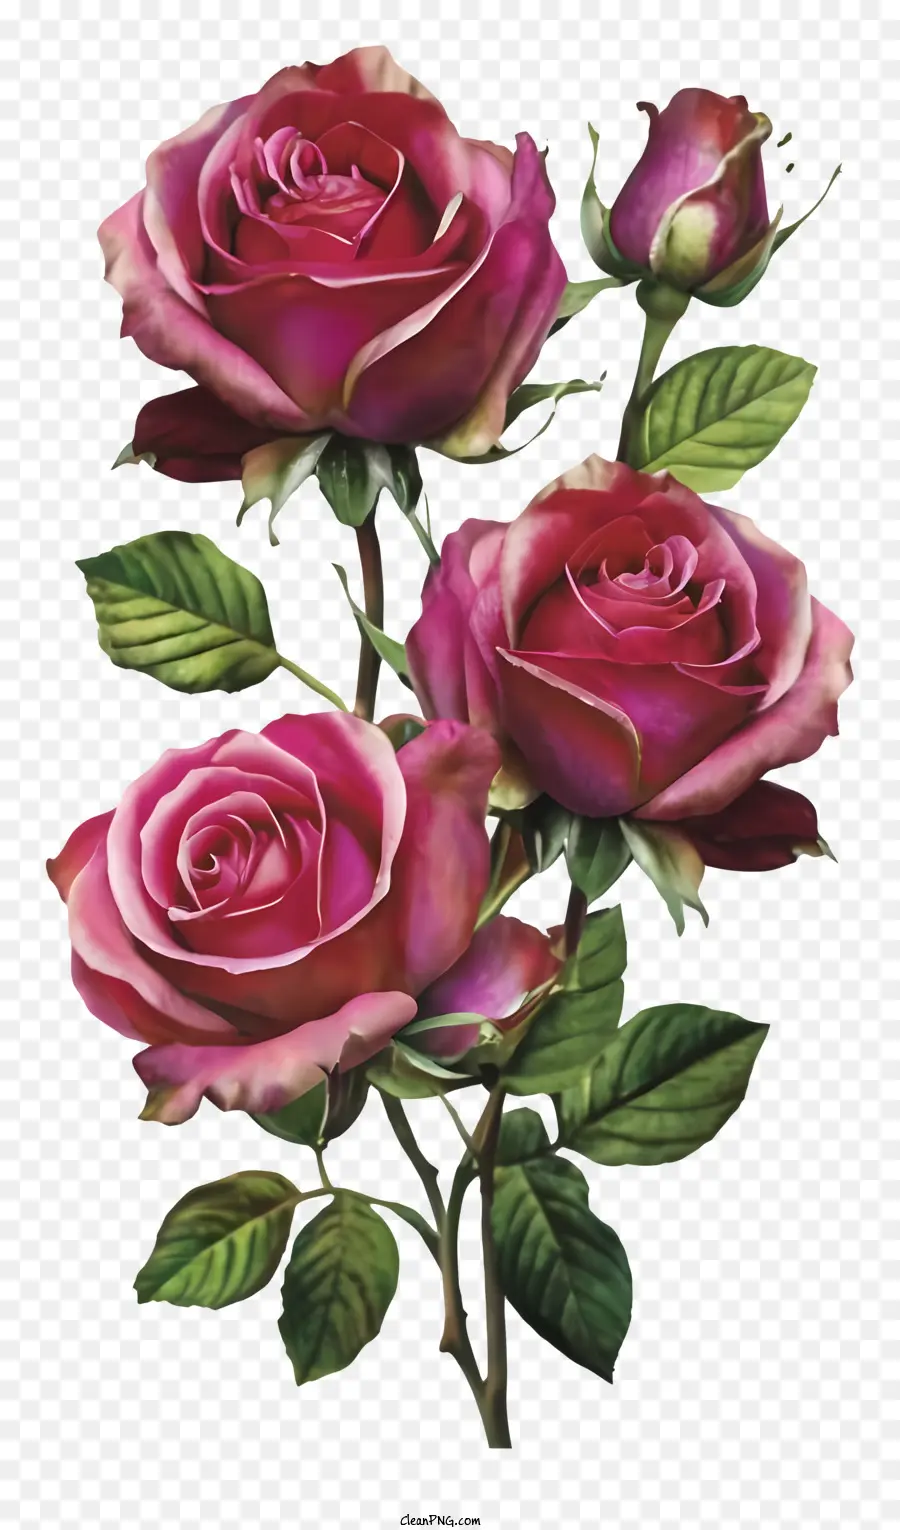 rosa Rosen - Rosa Rosen, die aus einer Vase herauswachsen